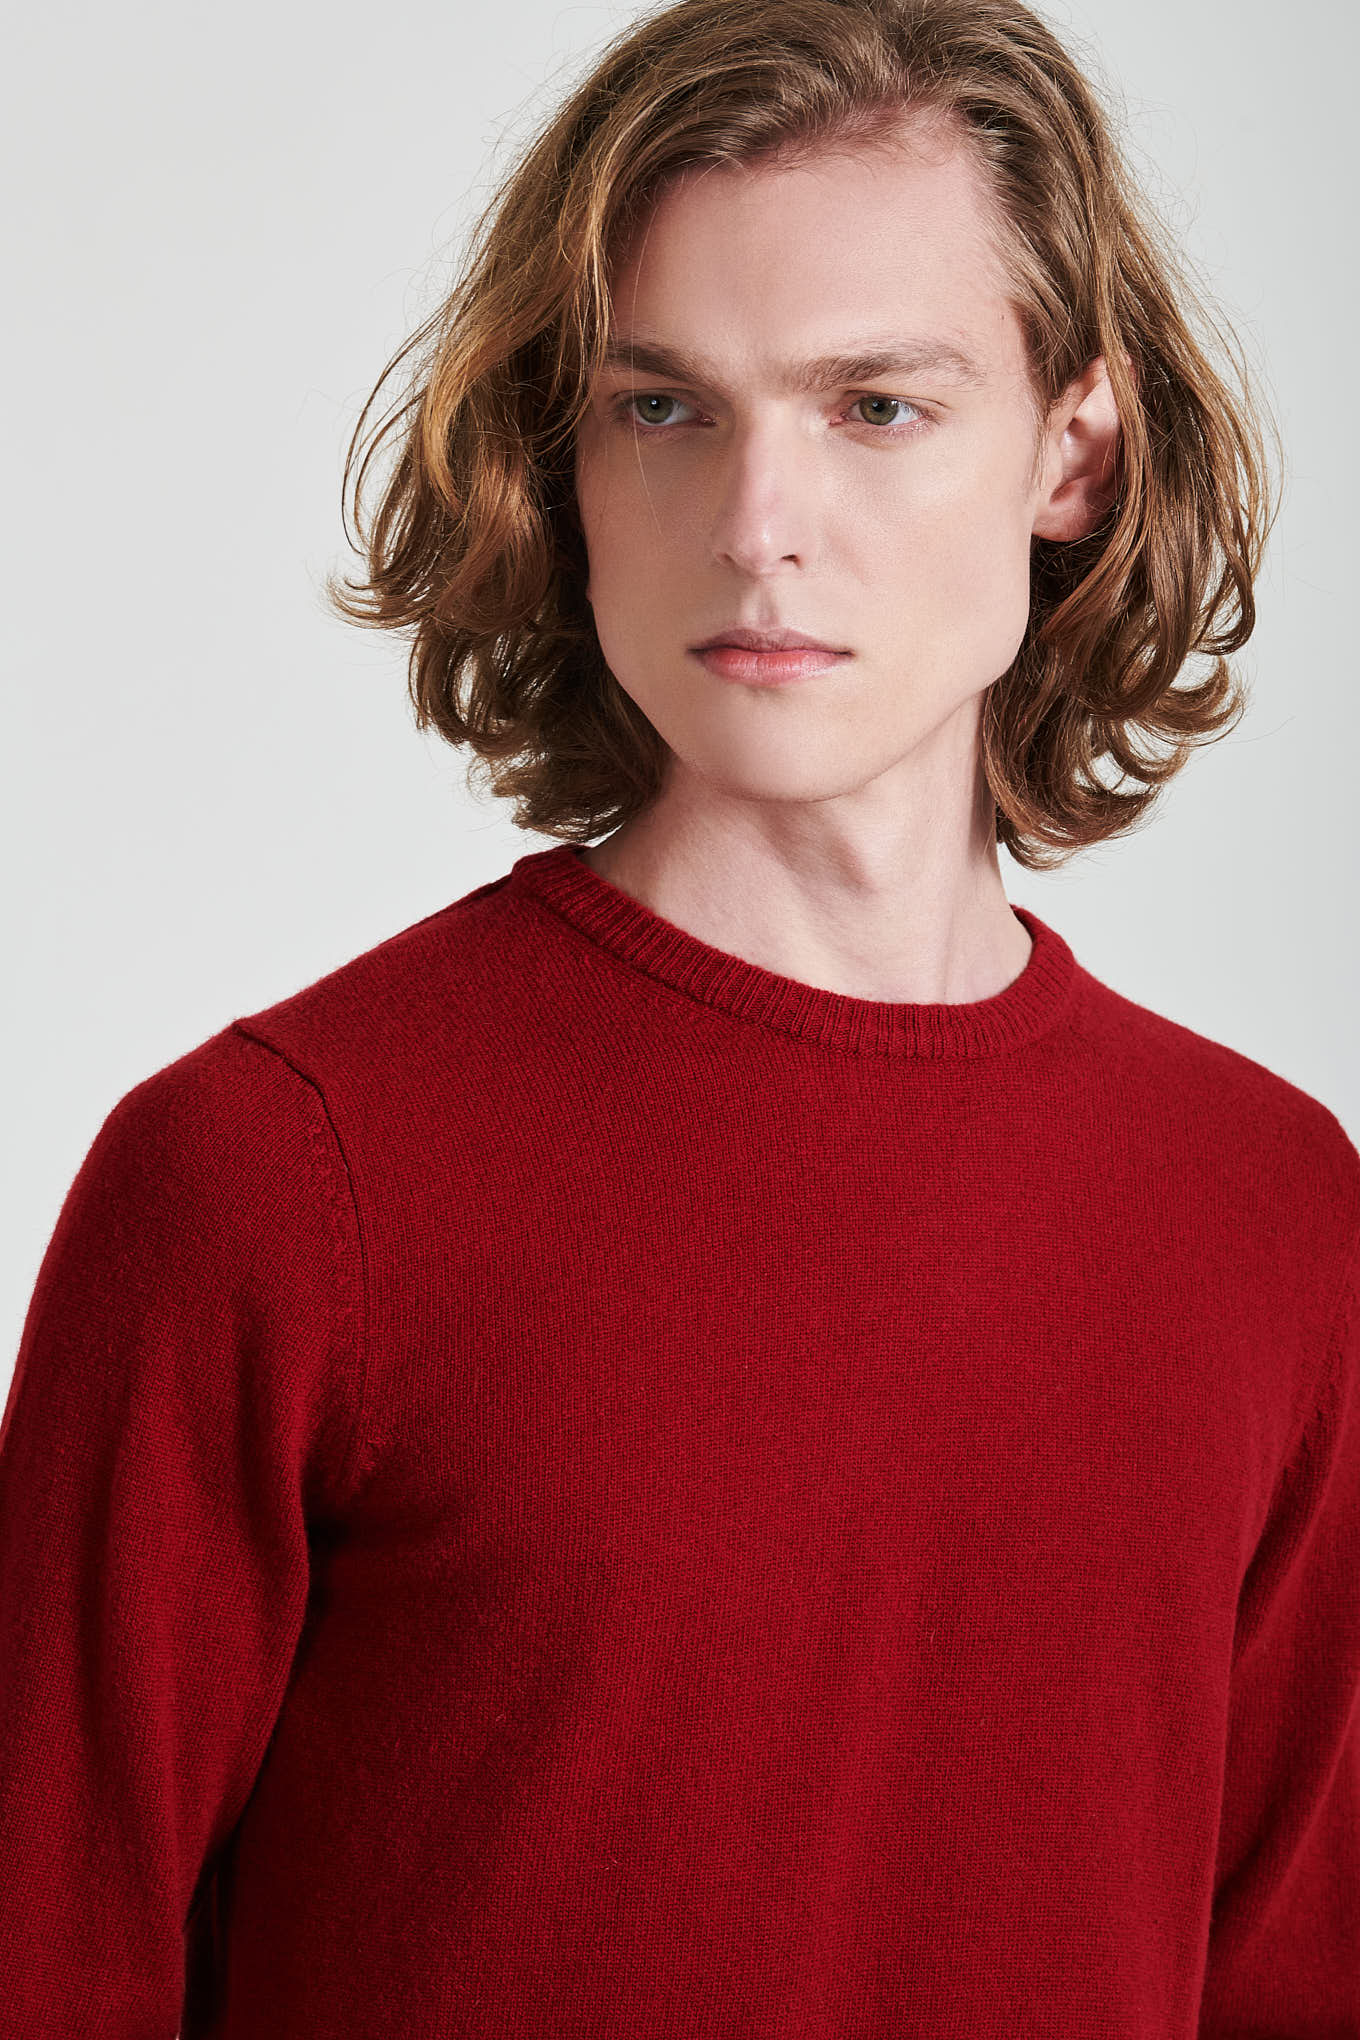 Sweater Dark Red Sport Man